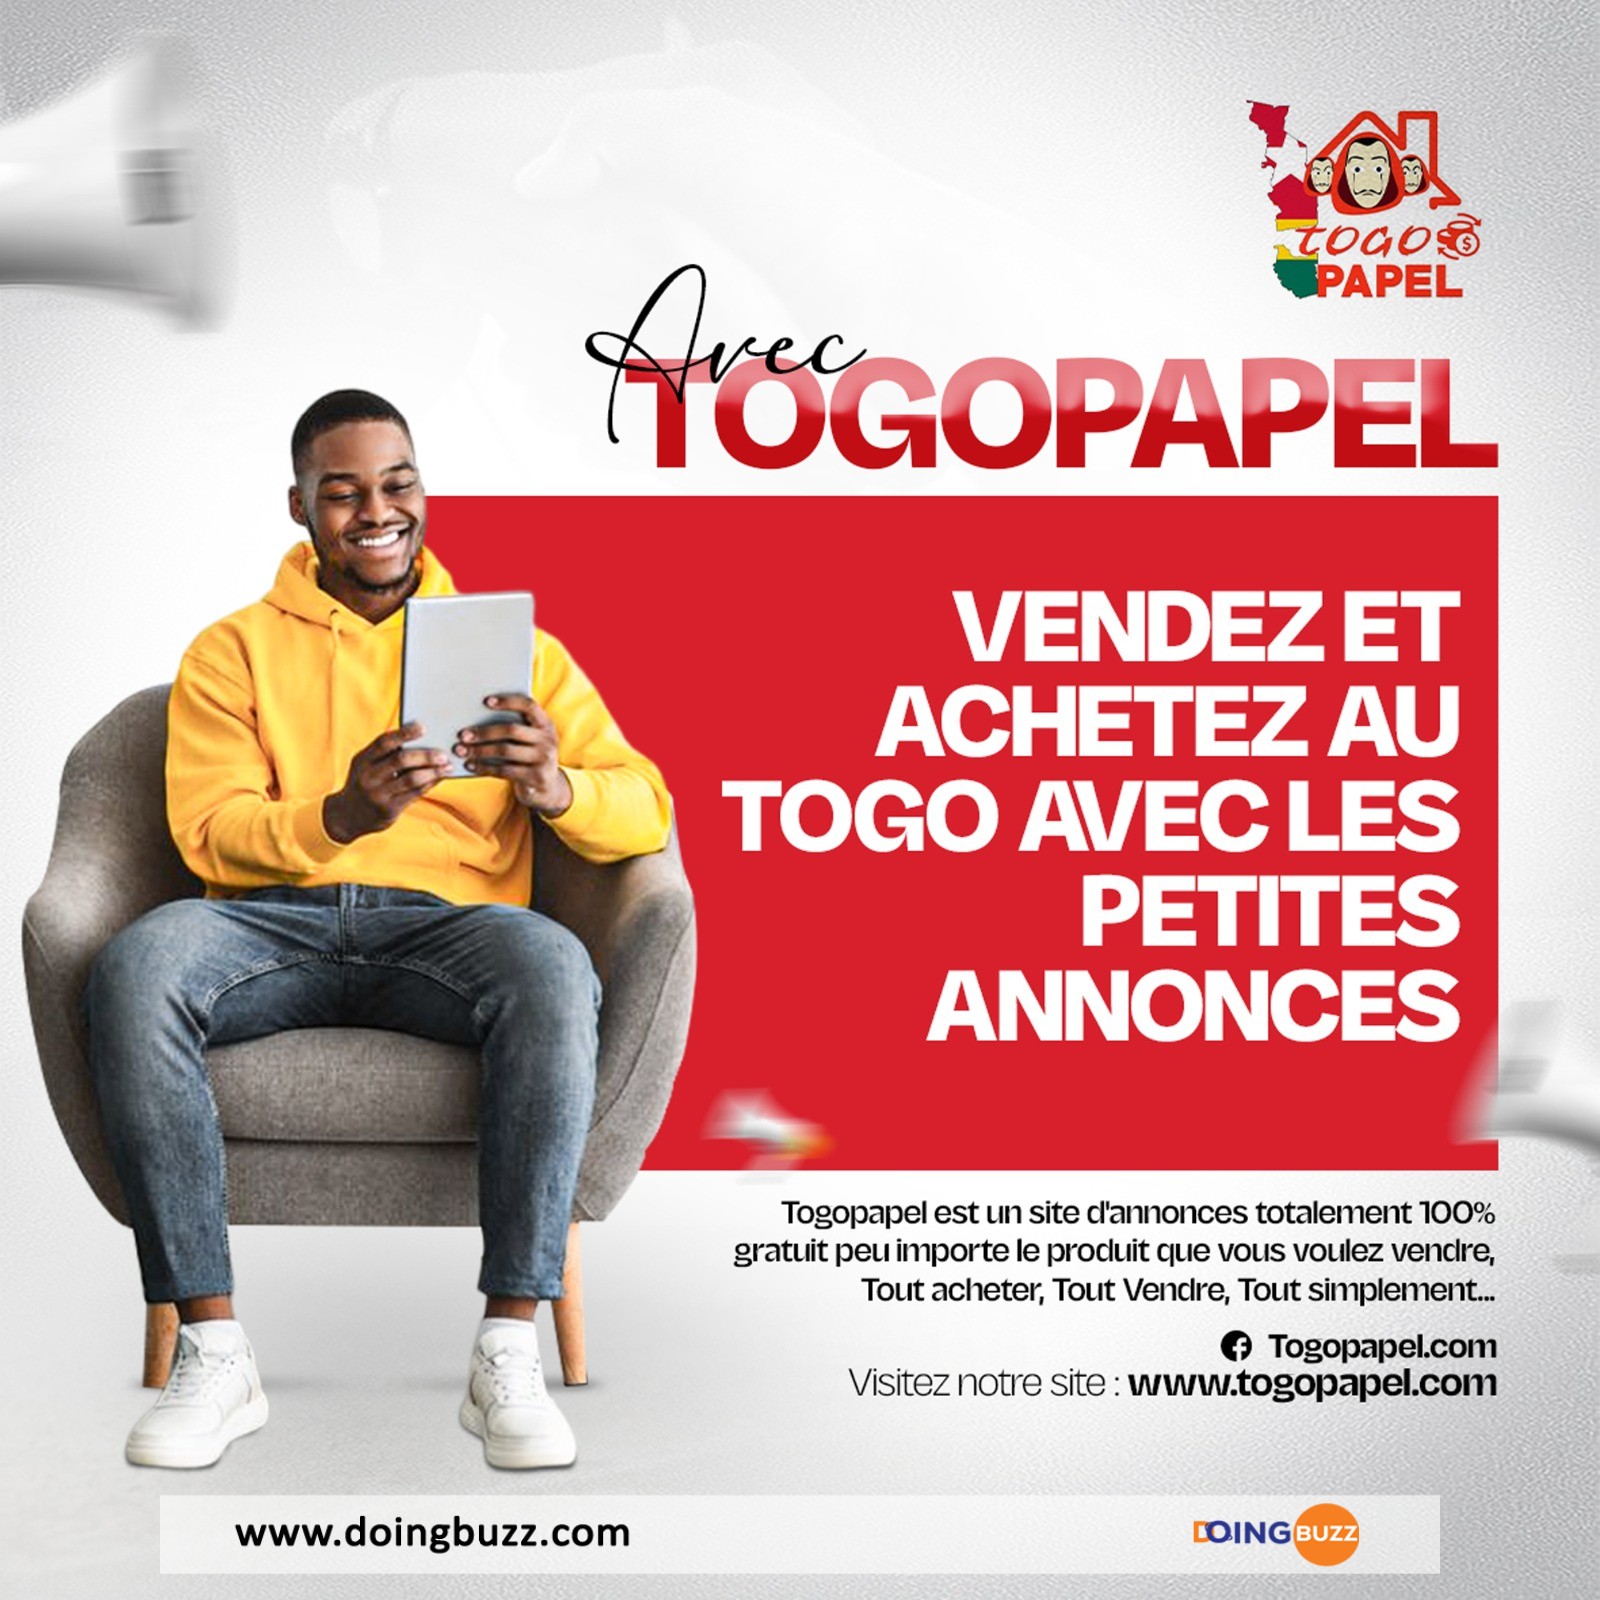 E-Commerce : Togopapel Permet Aux Vendeurs De Faire Des Annonces Gratuitement